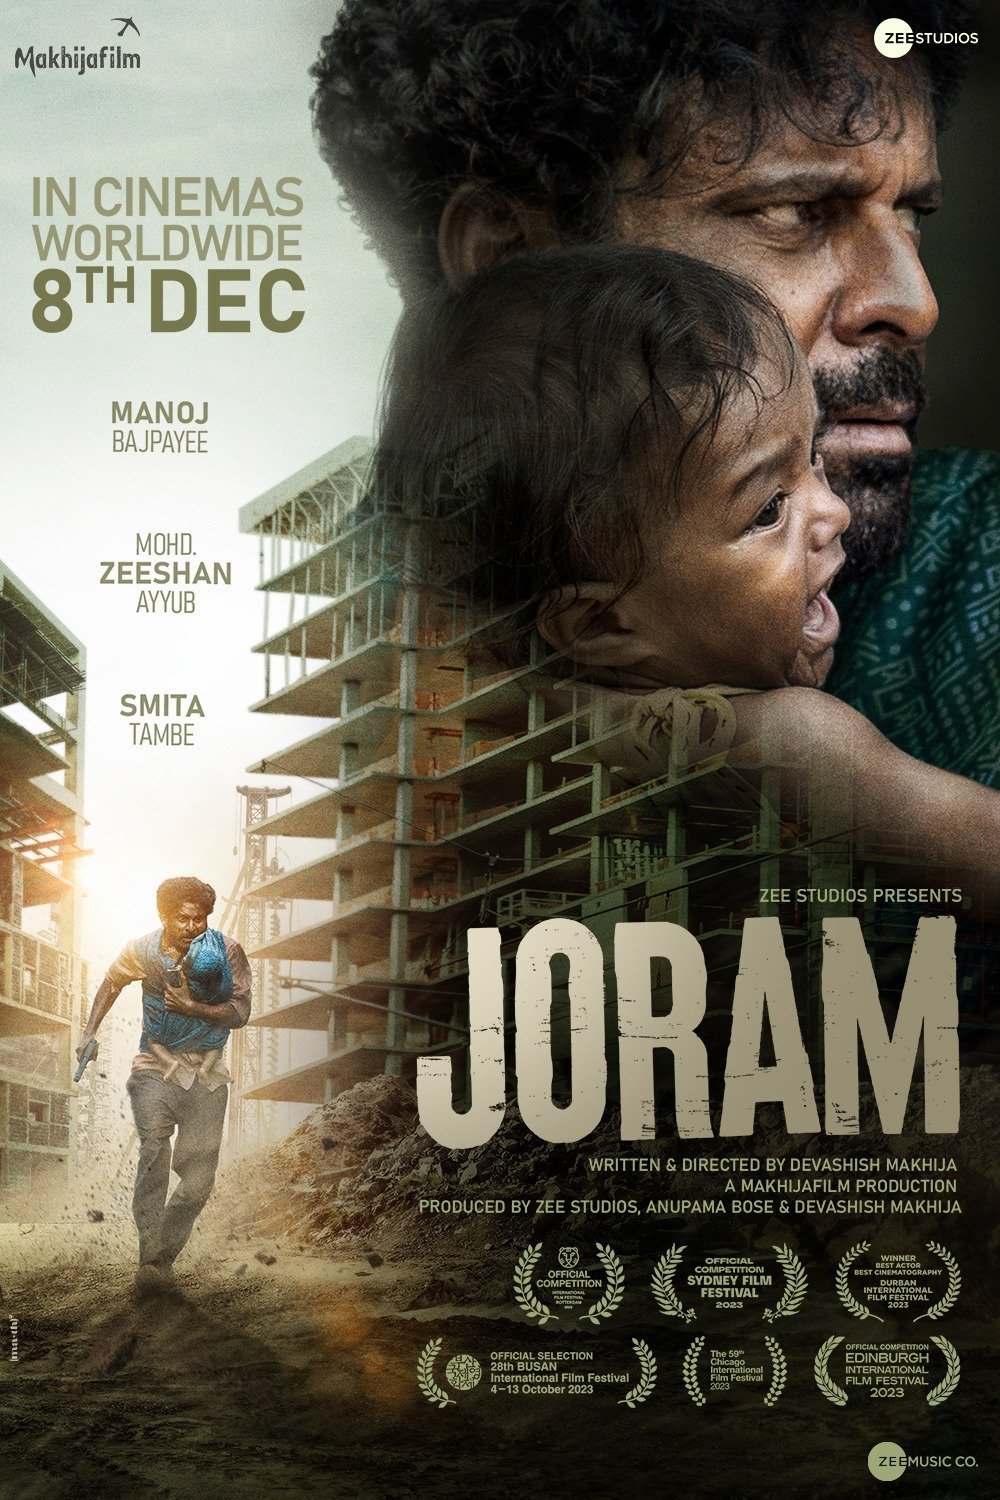 Hindi poster of the movie Joram